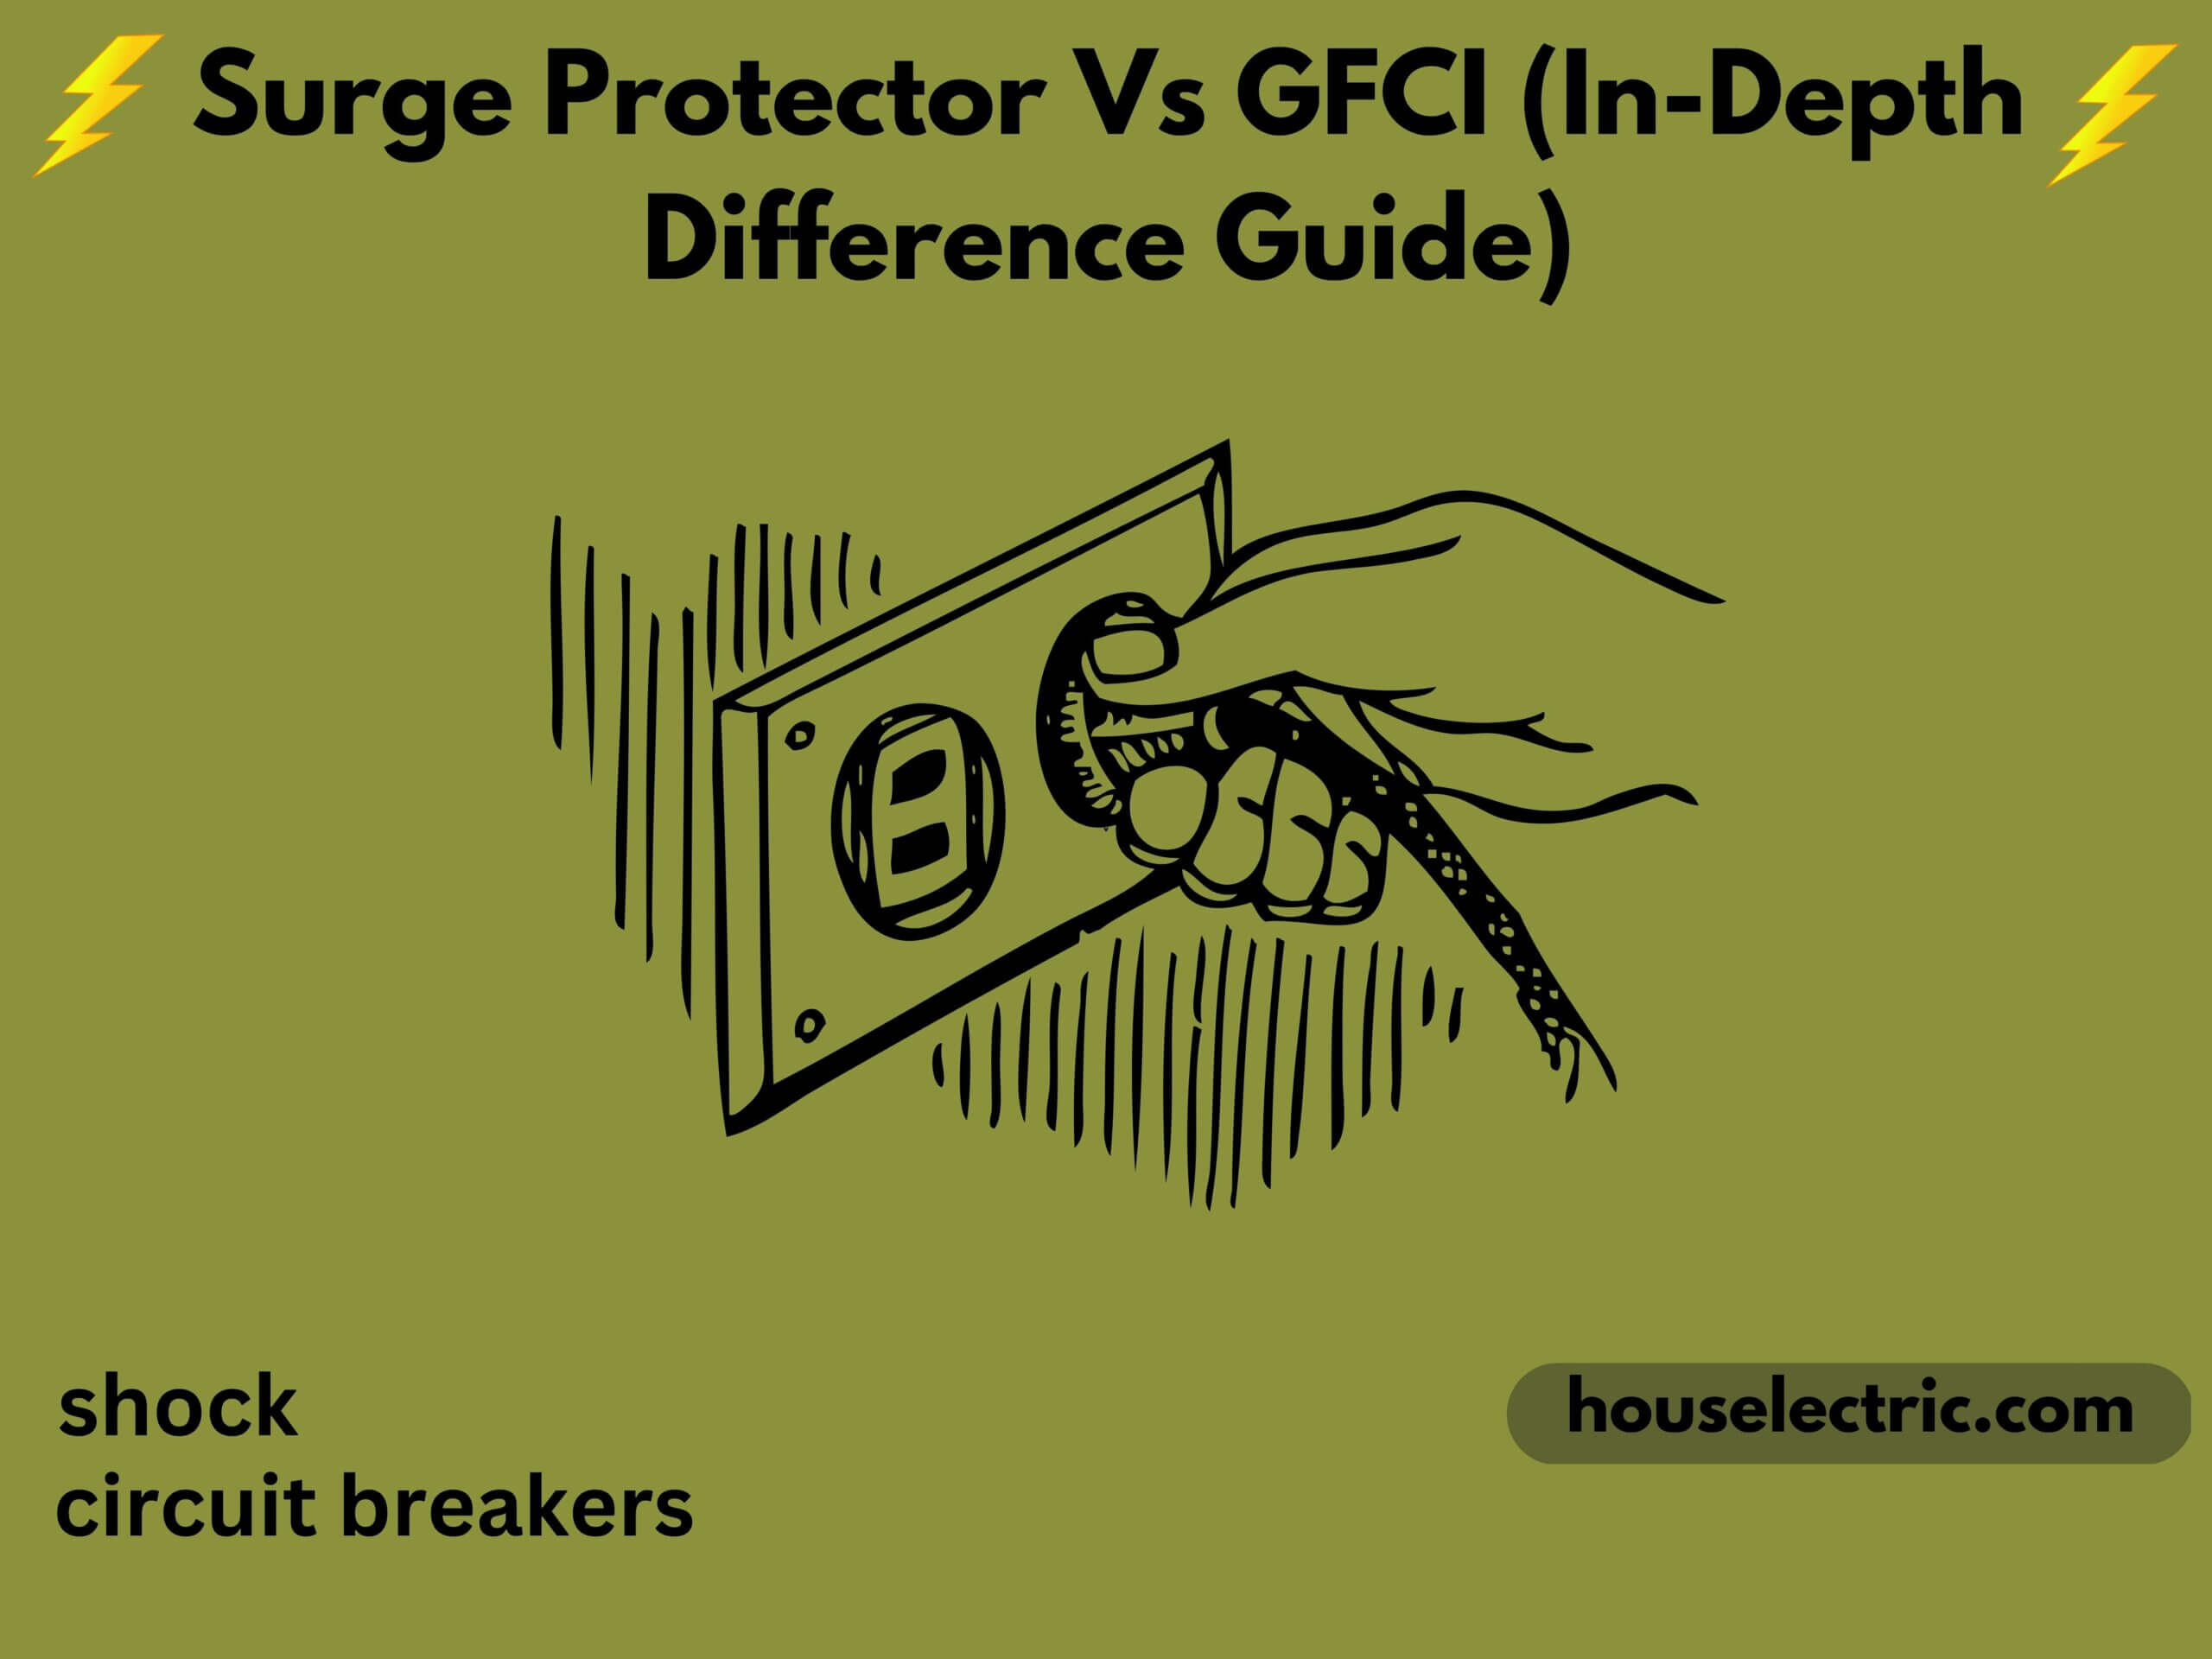 Surge Protector Vs GFCI